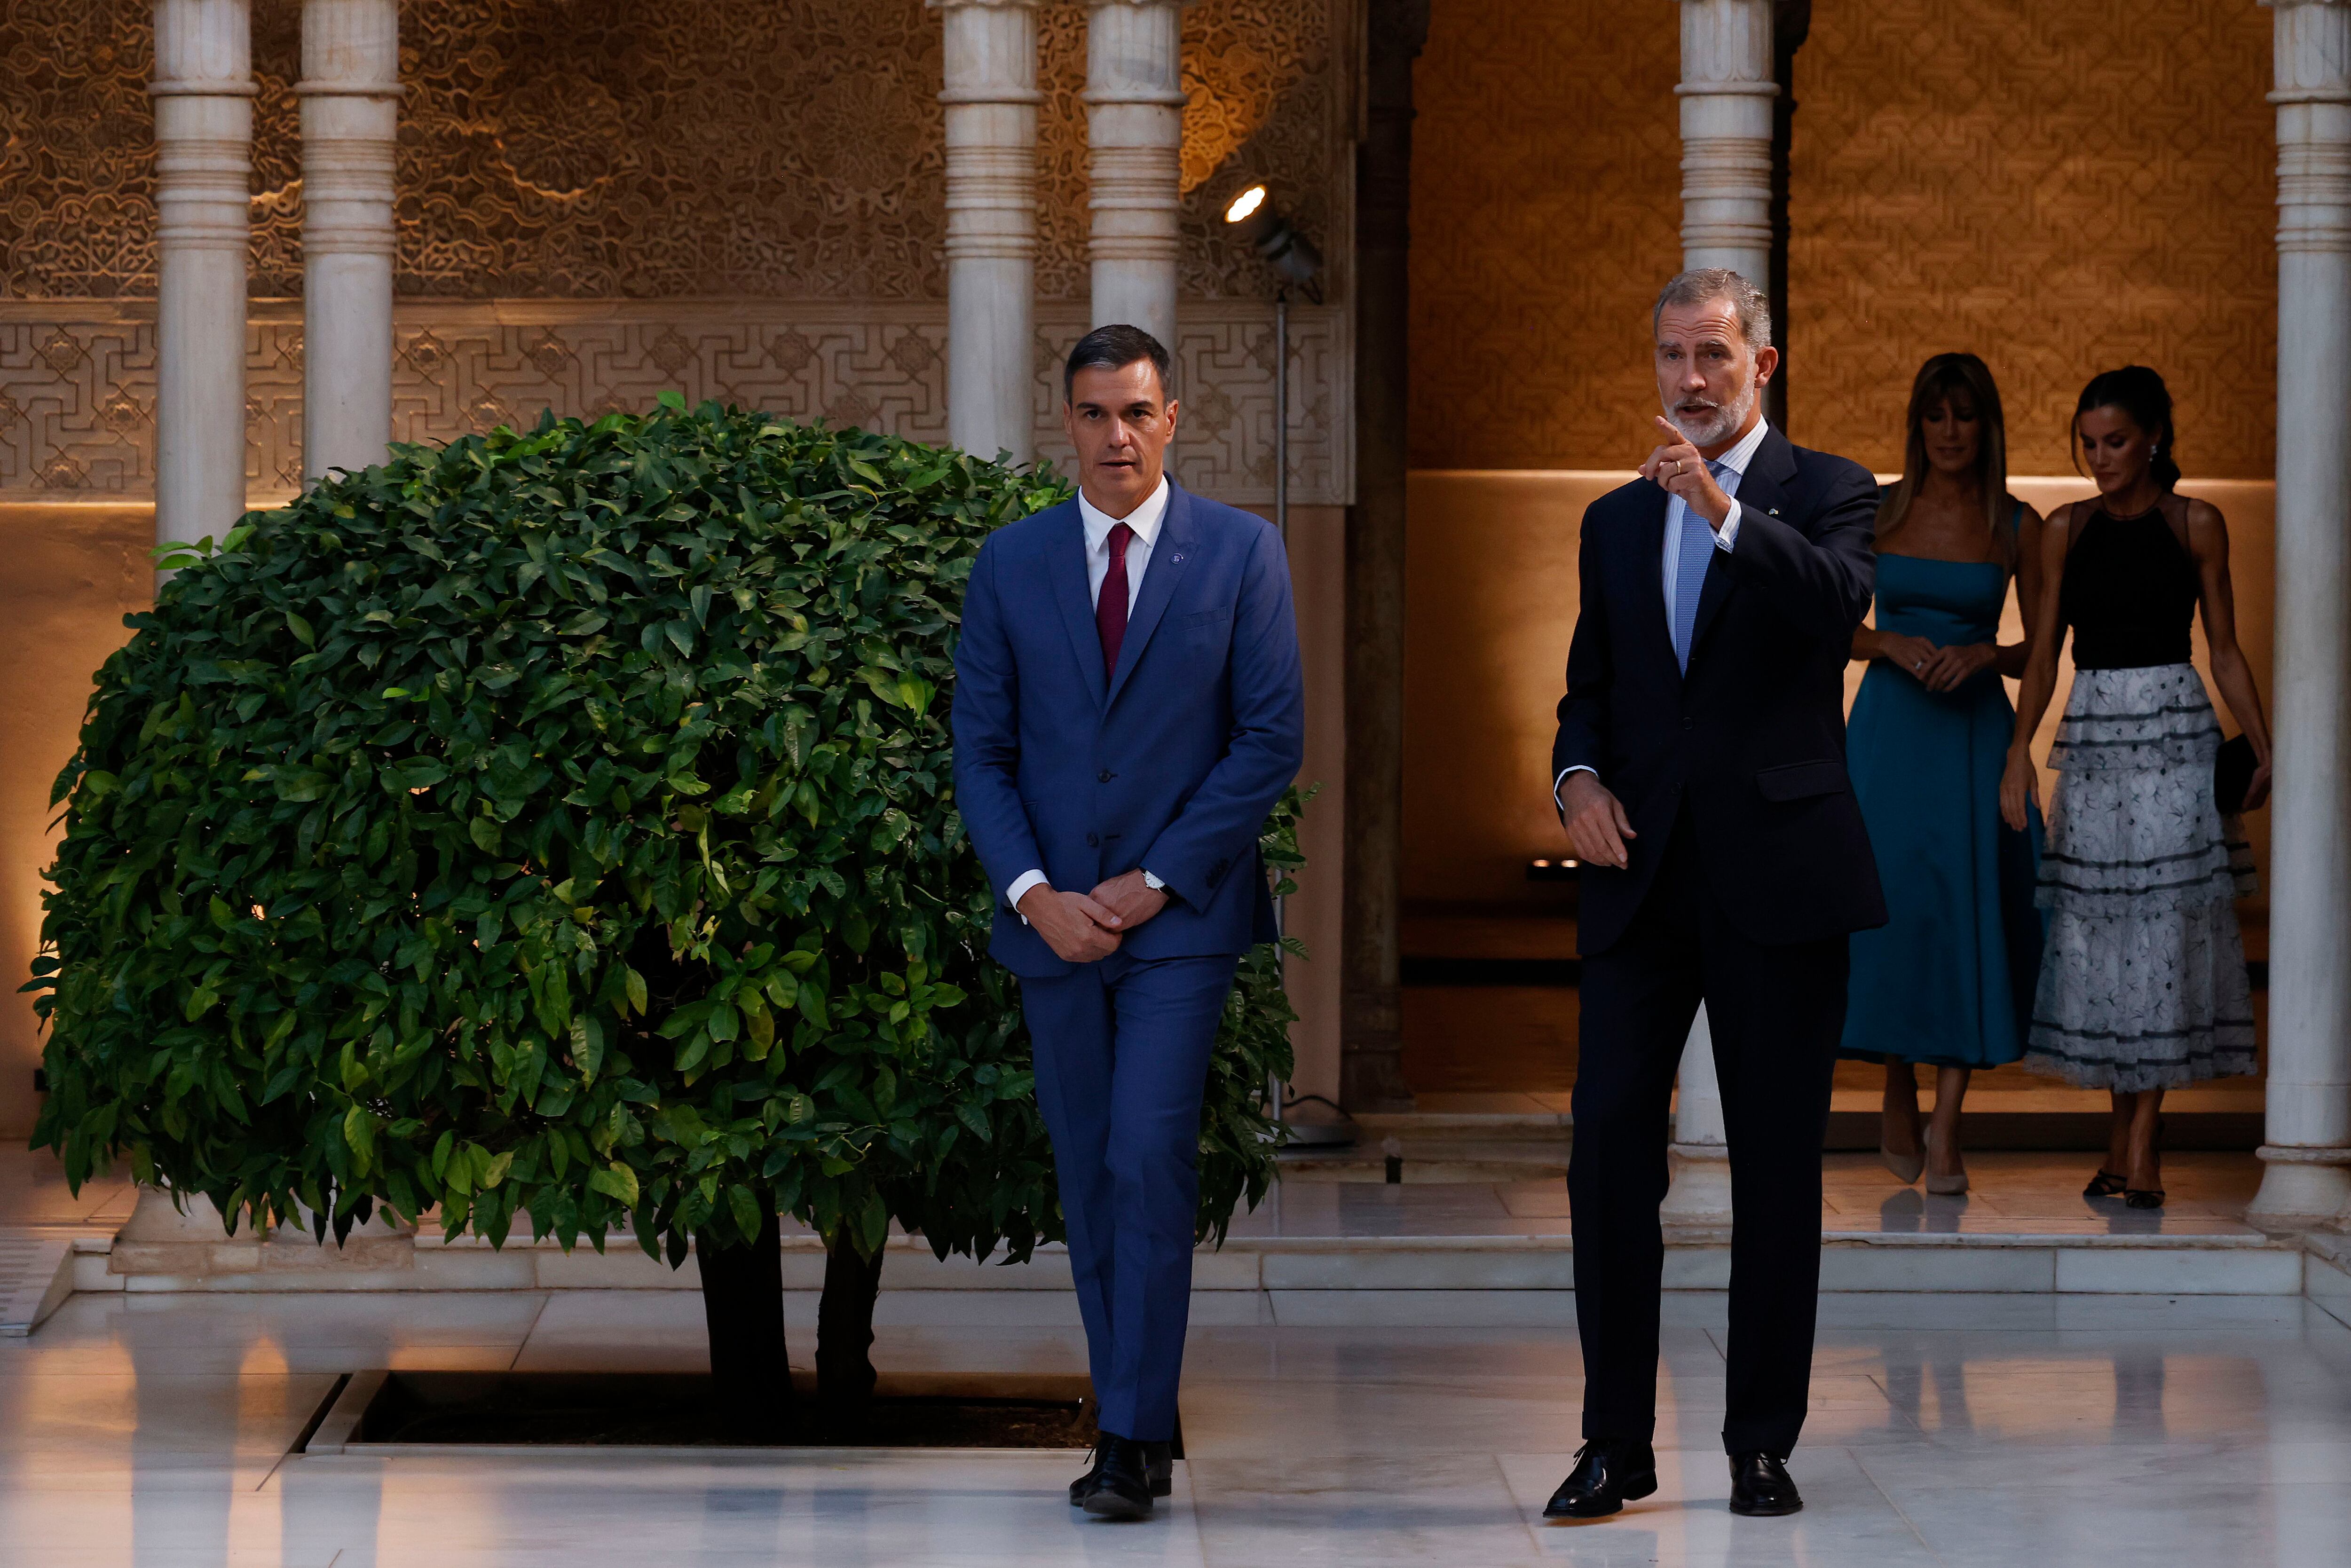 El rey Felipe VI conversa con el presidente del Gobierno en funciones, Pedro Sánchez, en el Patio de los Leones. Al fondo, la reina Letizia y Begoña Gómez, esposa de Pedro Sánchez.